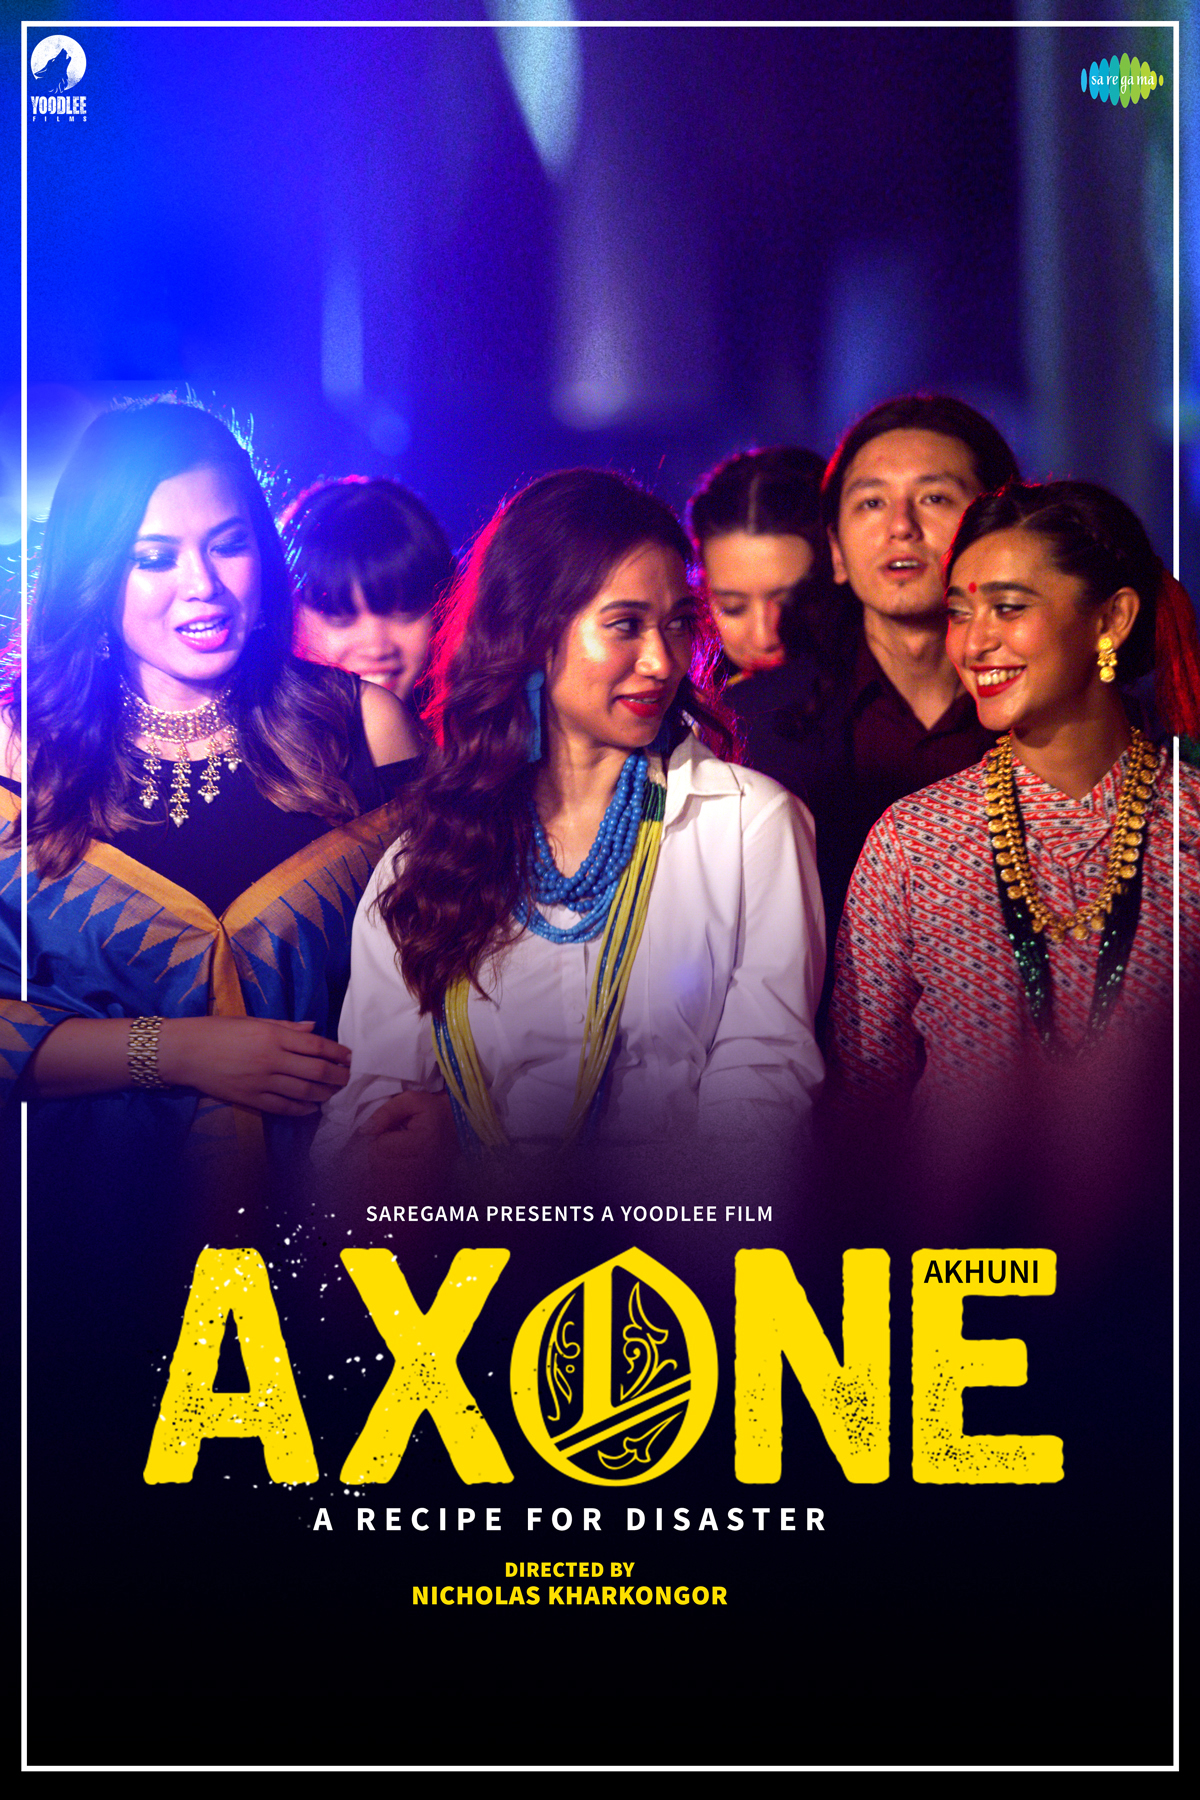 ดูหนังออนไลน์ฟรี ดูหนังใหม่ AXONE (2019) เมนูร้าวฉาน [ซับไทย]